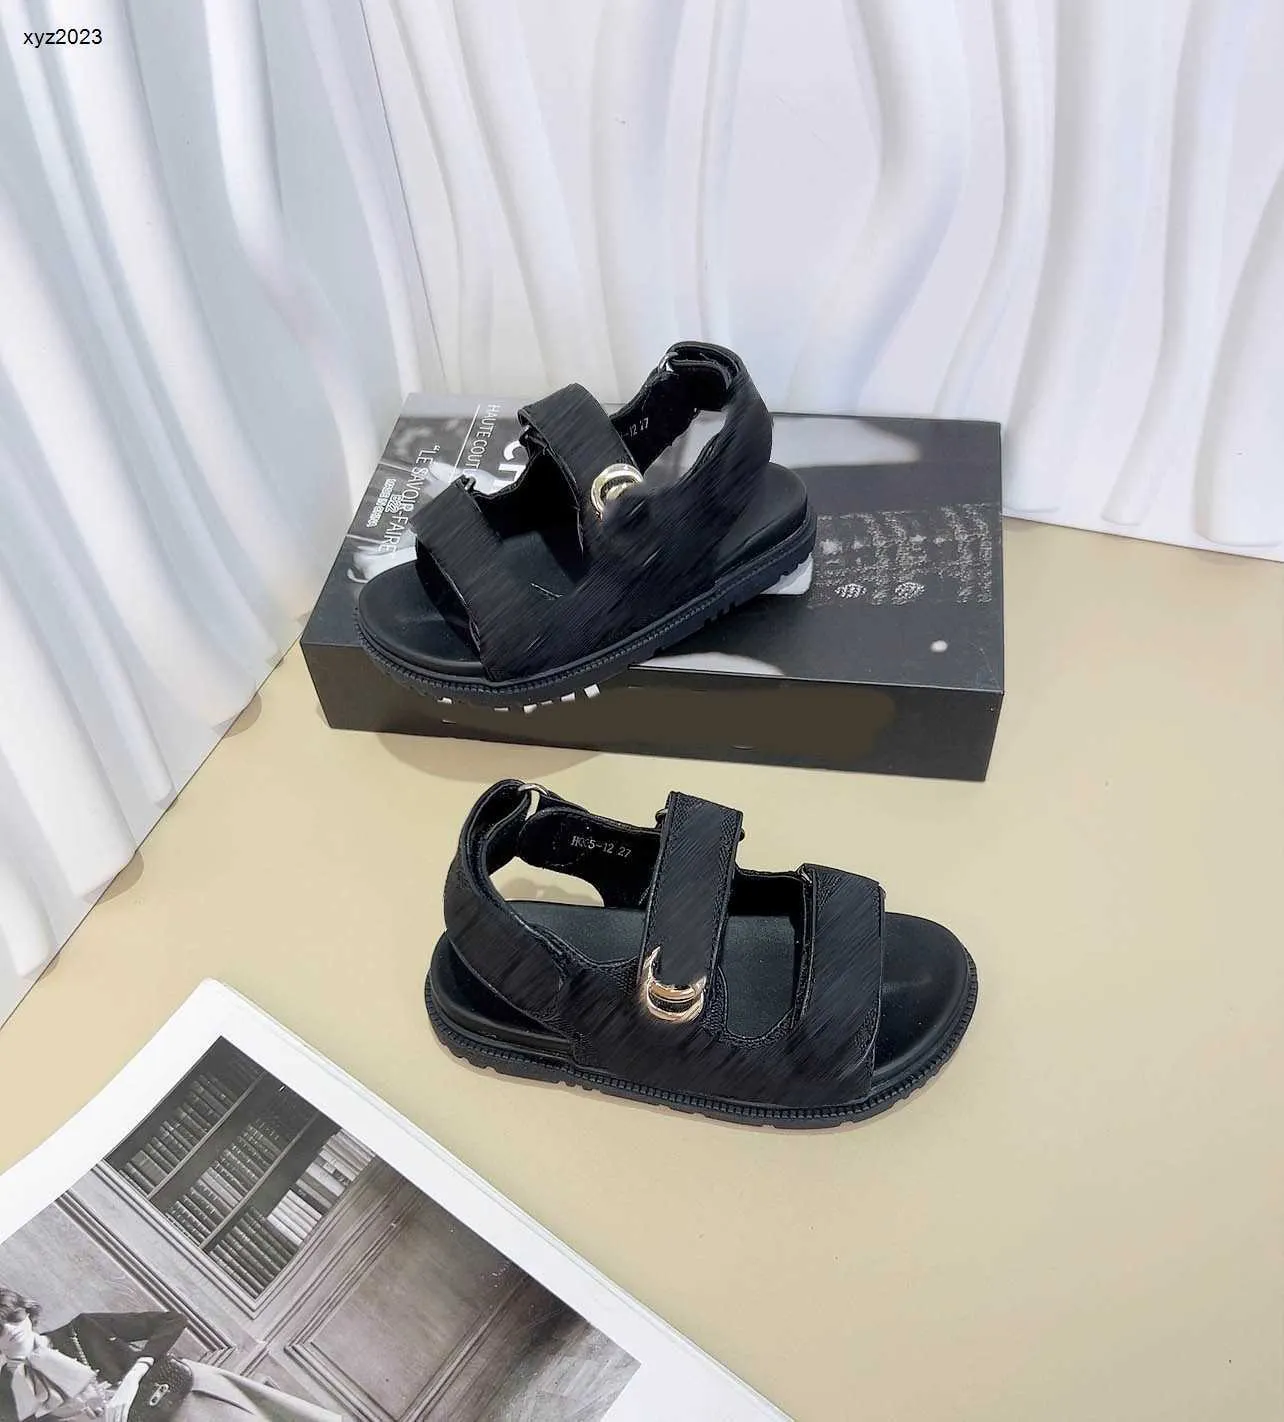 Mode Baby Sandalen Buchstaben Logo dunkle Streifen Kinder Schuhe Kosten Preis Größe 26-35 einschließlich Box Anti Slip Sohle Sommer Girls Pantoffeln 24may